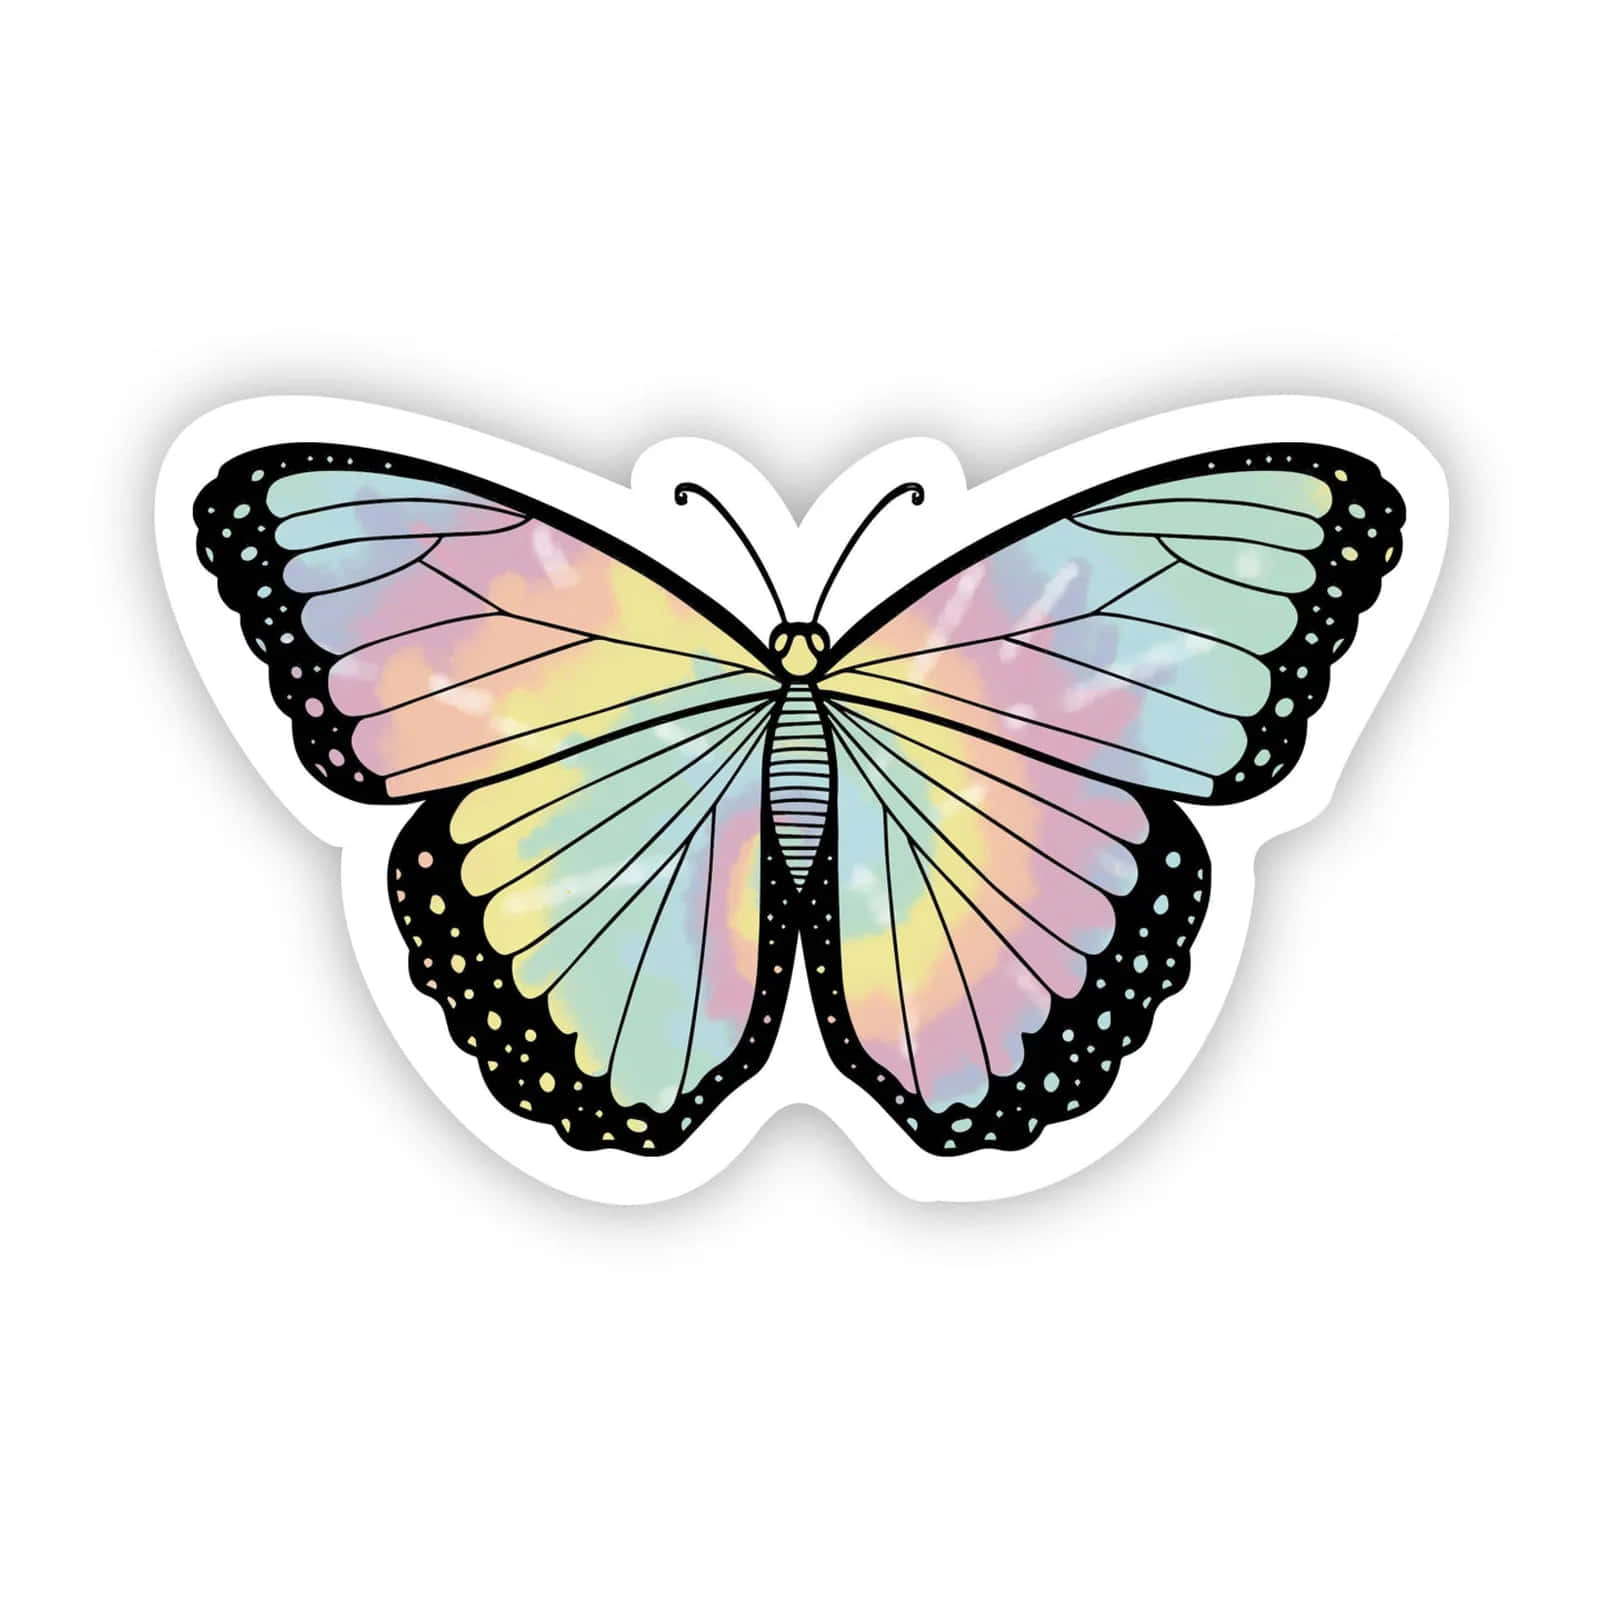 Unapegatina De Mariposa Con Colores Del Arco Iris